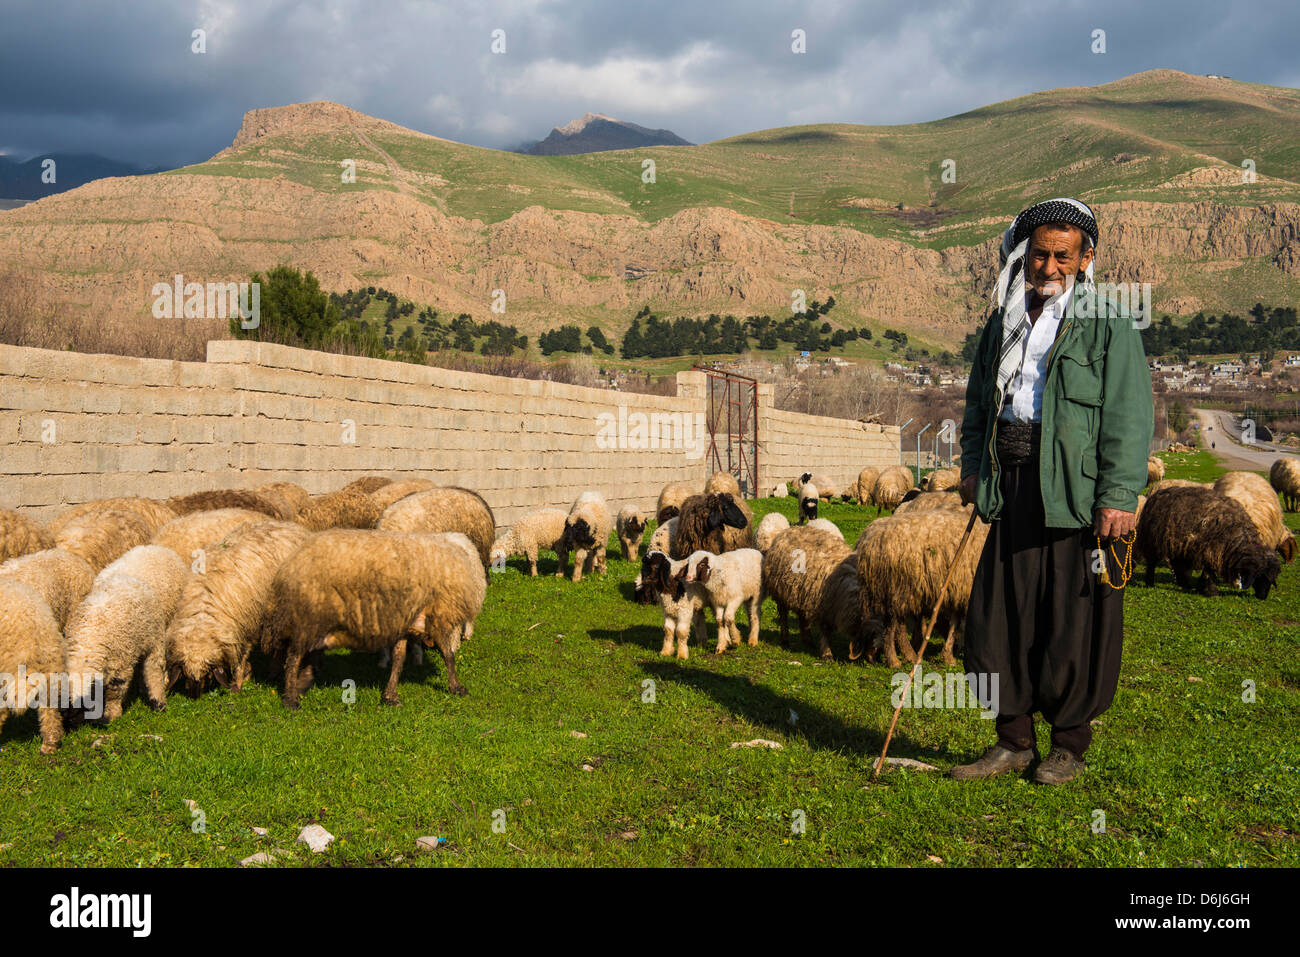 Schäfer mit seiner Herde von Schafen in Ahmedawa an der Grenze zwischen Iran, Kurdistan-Irak, Irak, Nahost Stockfoto